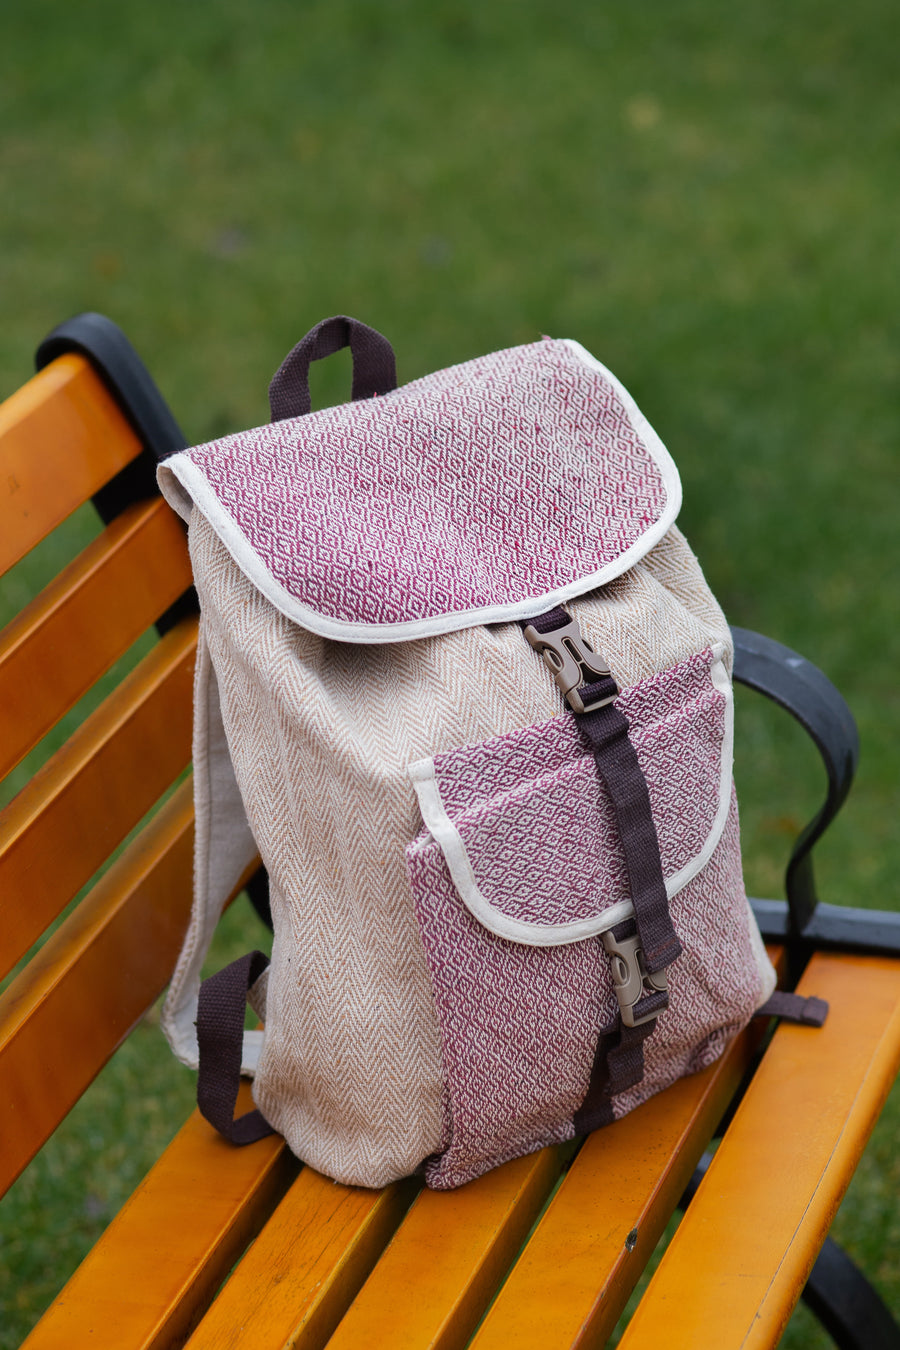 Himalayan bagpack from natural hemp - Linen Couture